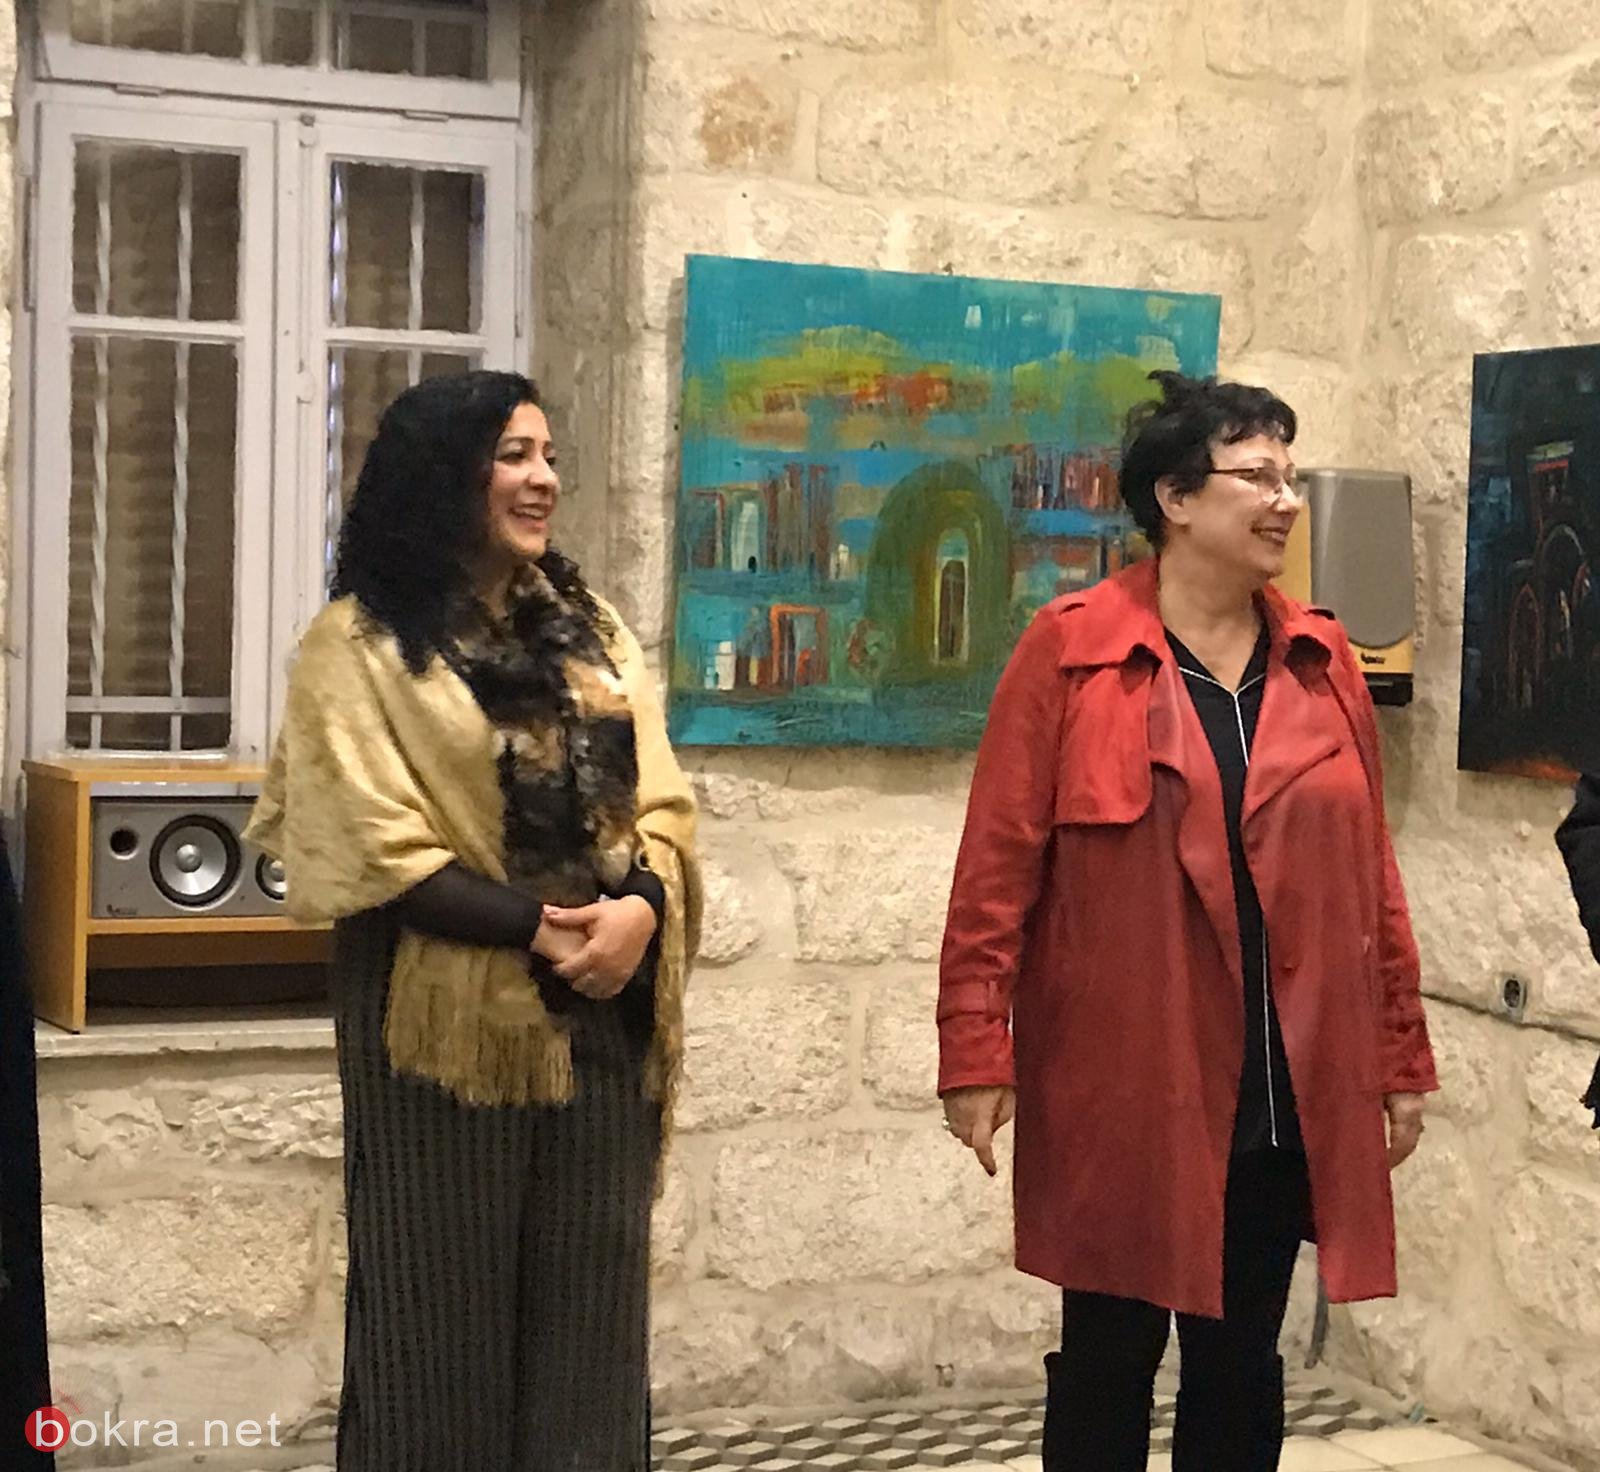 القدس: افتتاح معرض "أبواب وشبابيك" للفنانة خزيمه حامد-4